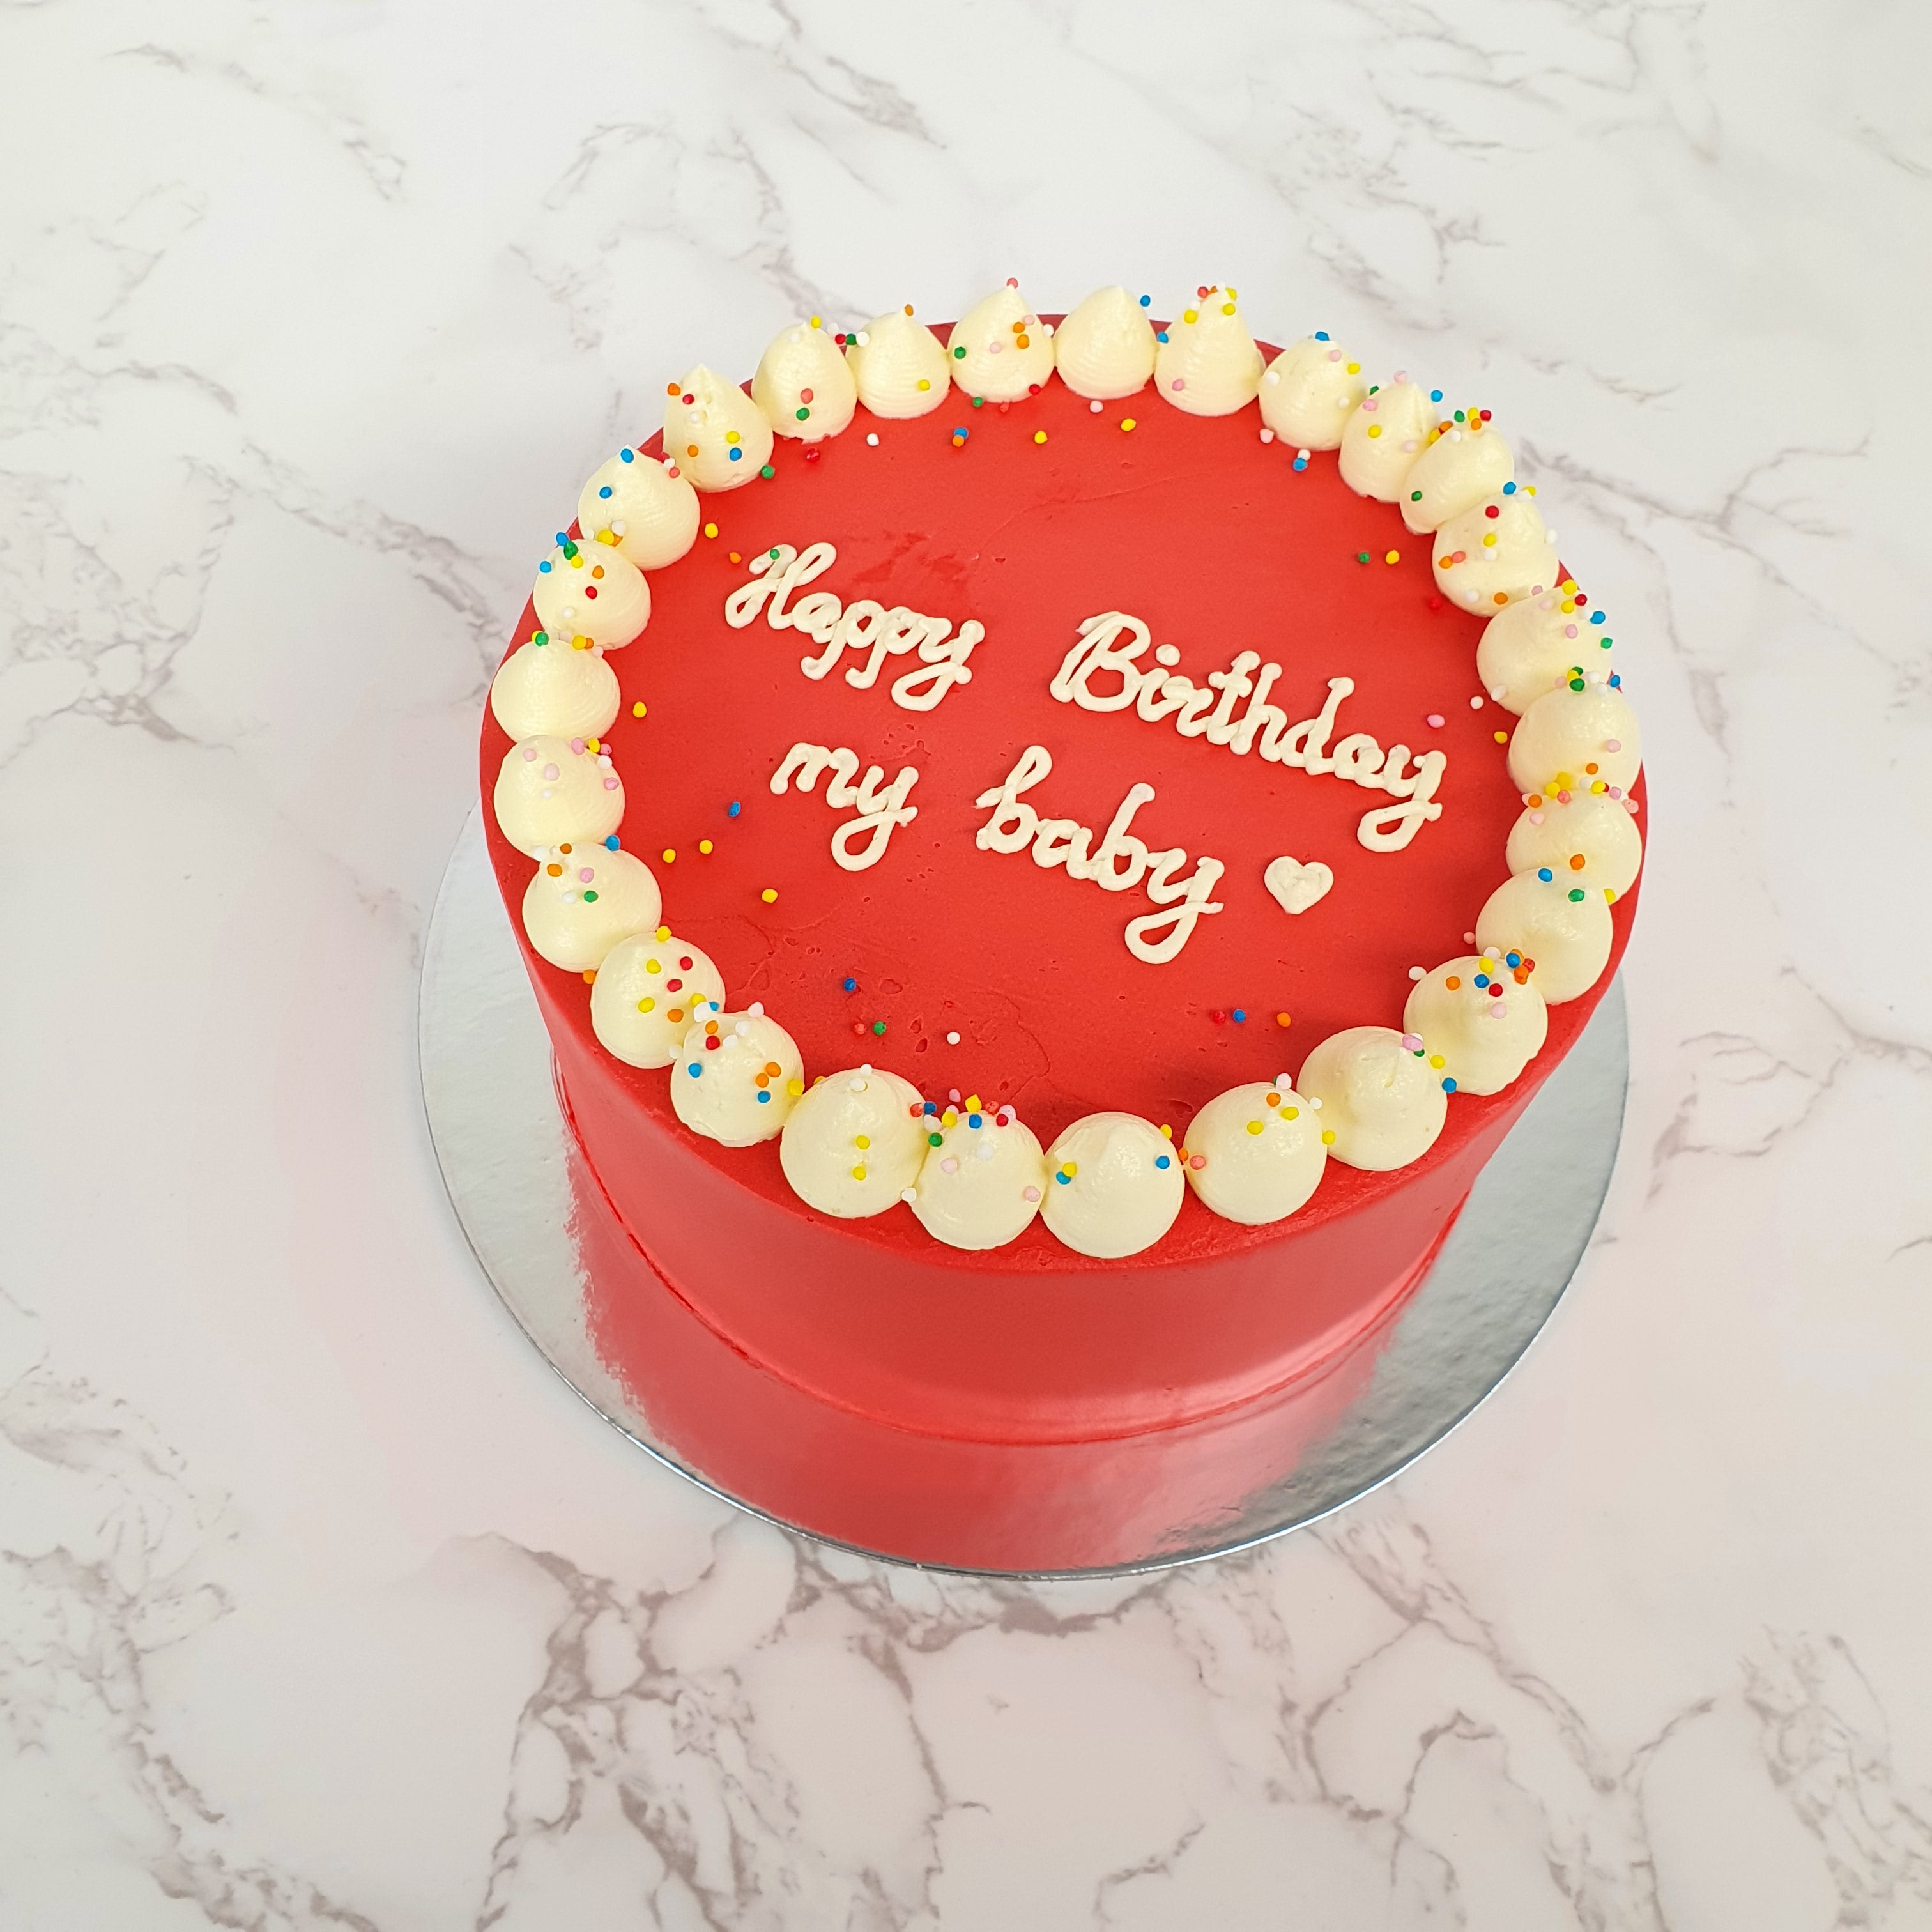 Red Cake Images - Free Download on Freepik